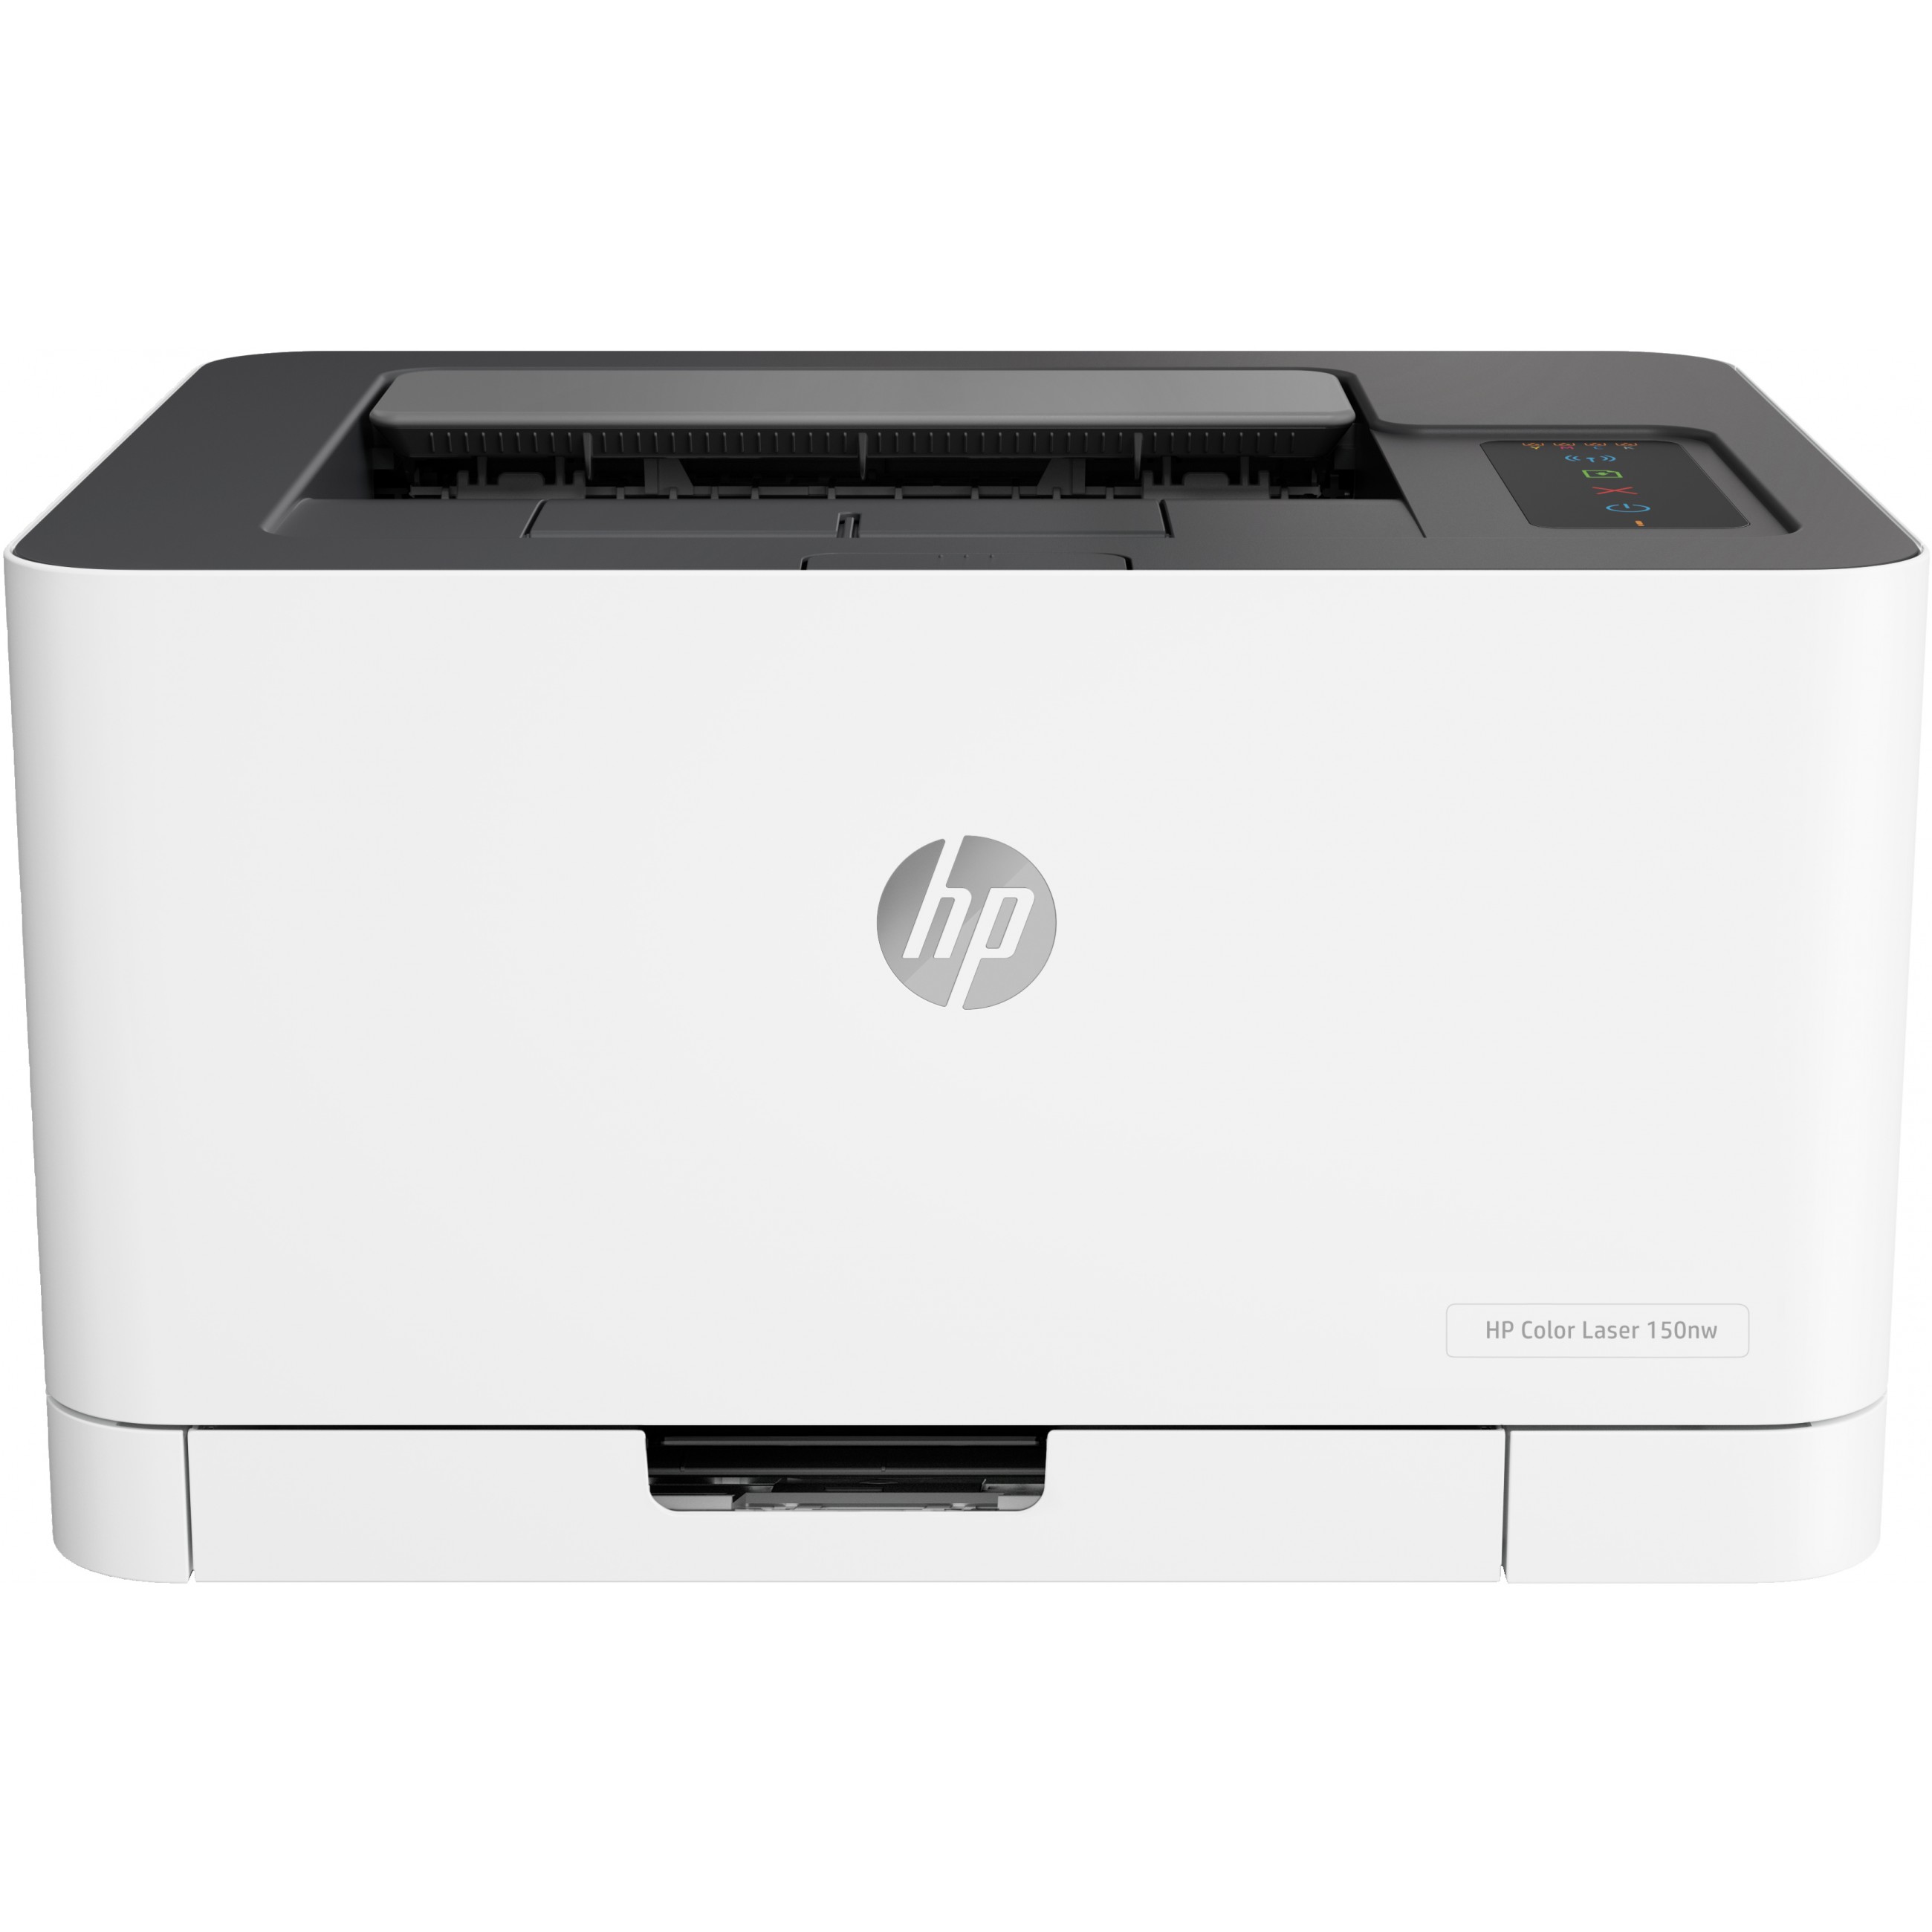 HP Color Laser 150nw Drucken